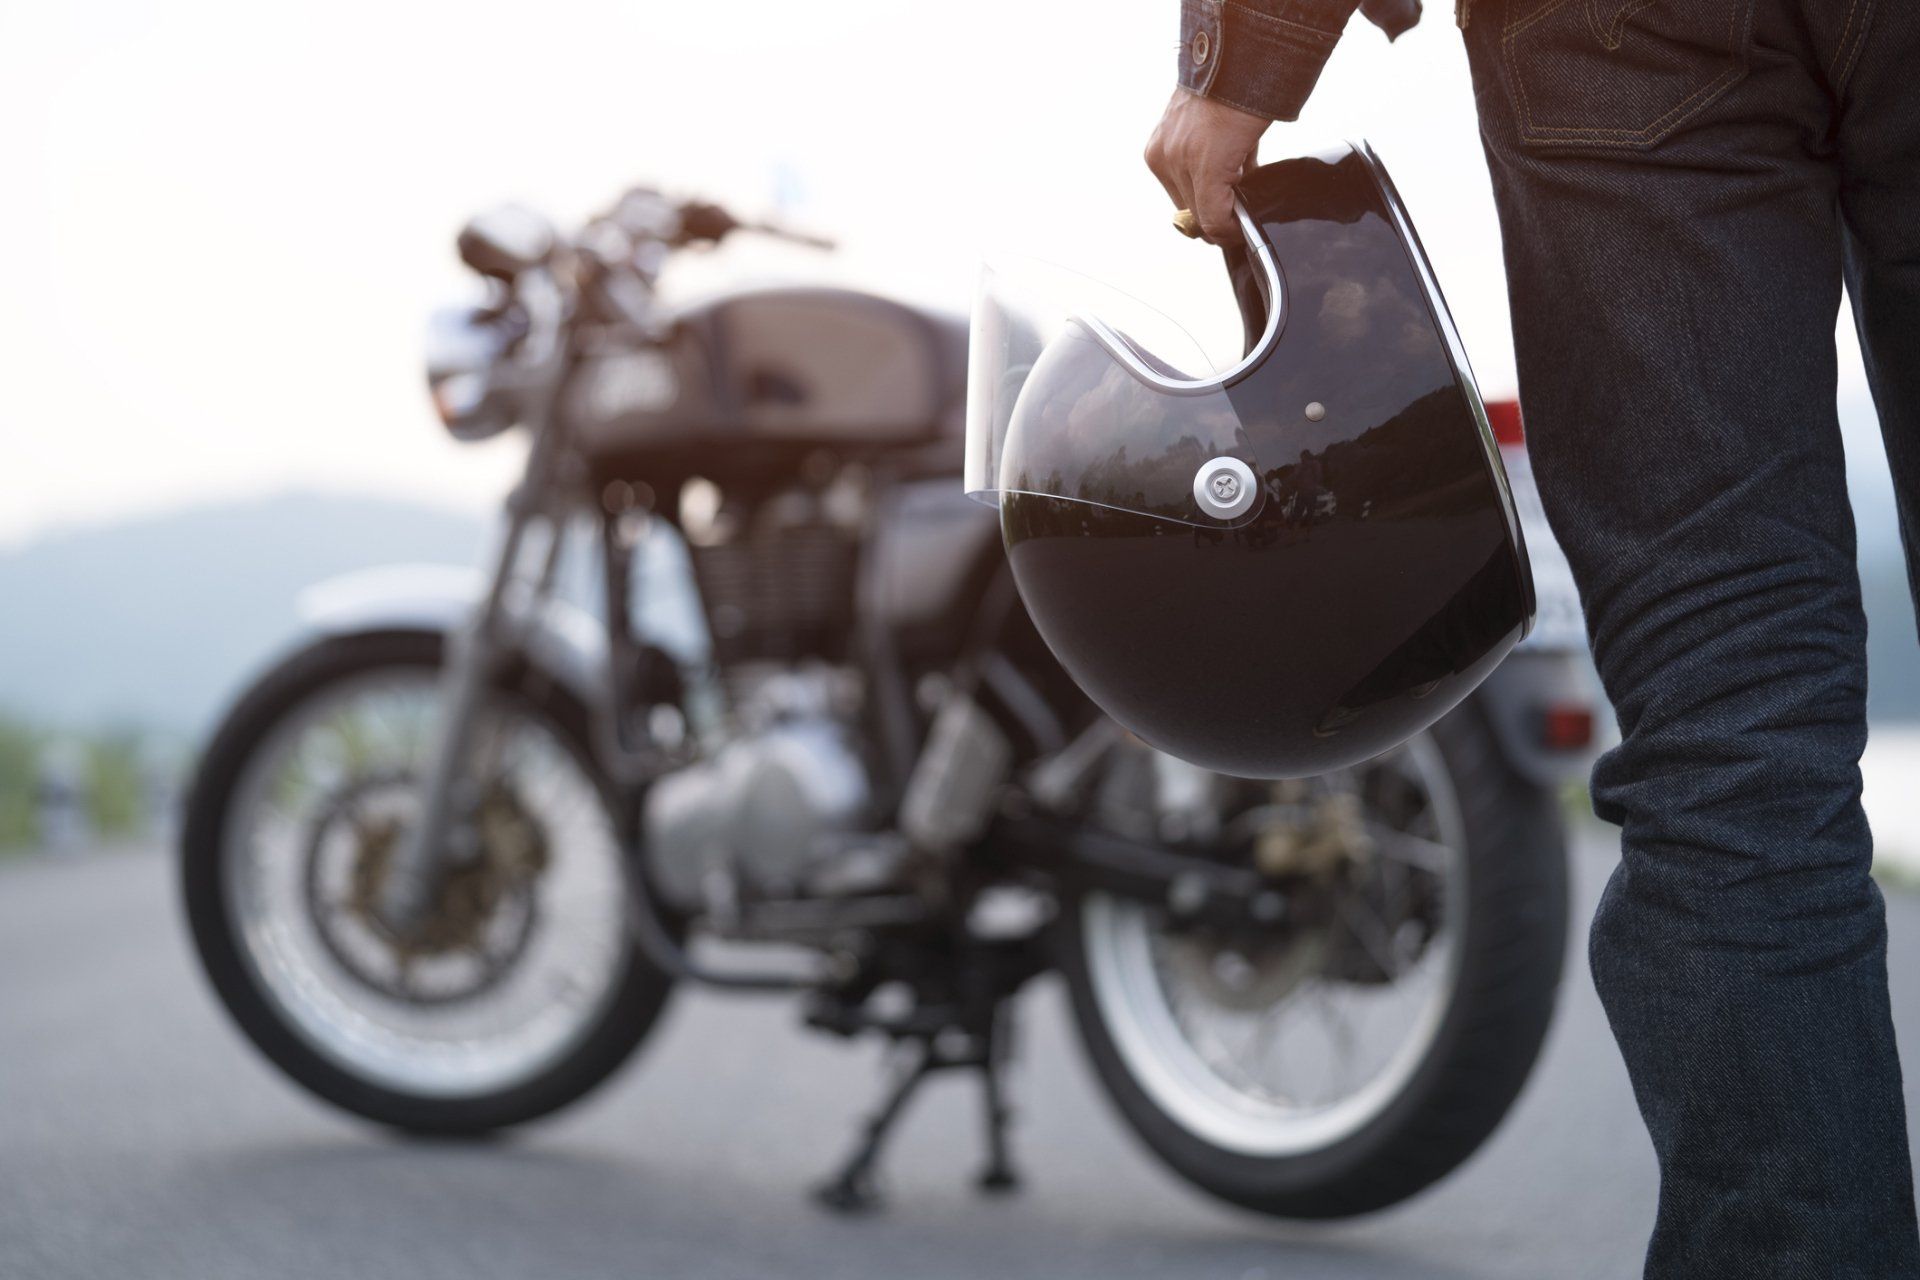 Couple On Motorcycle — Motorcycle Insurance in Marietta, GA